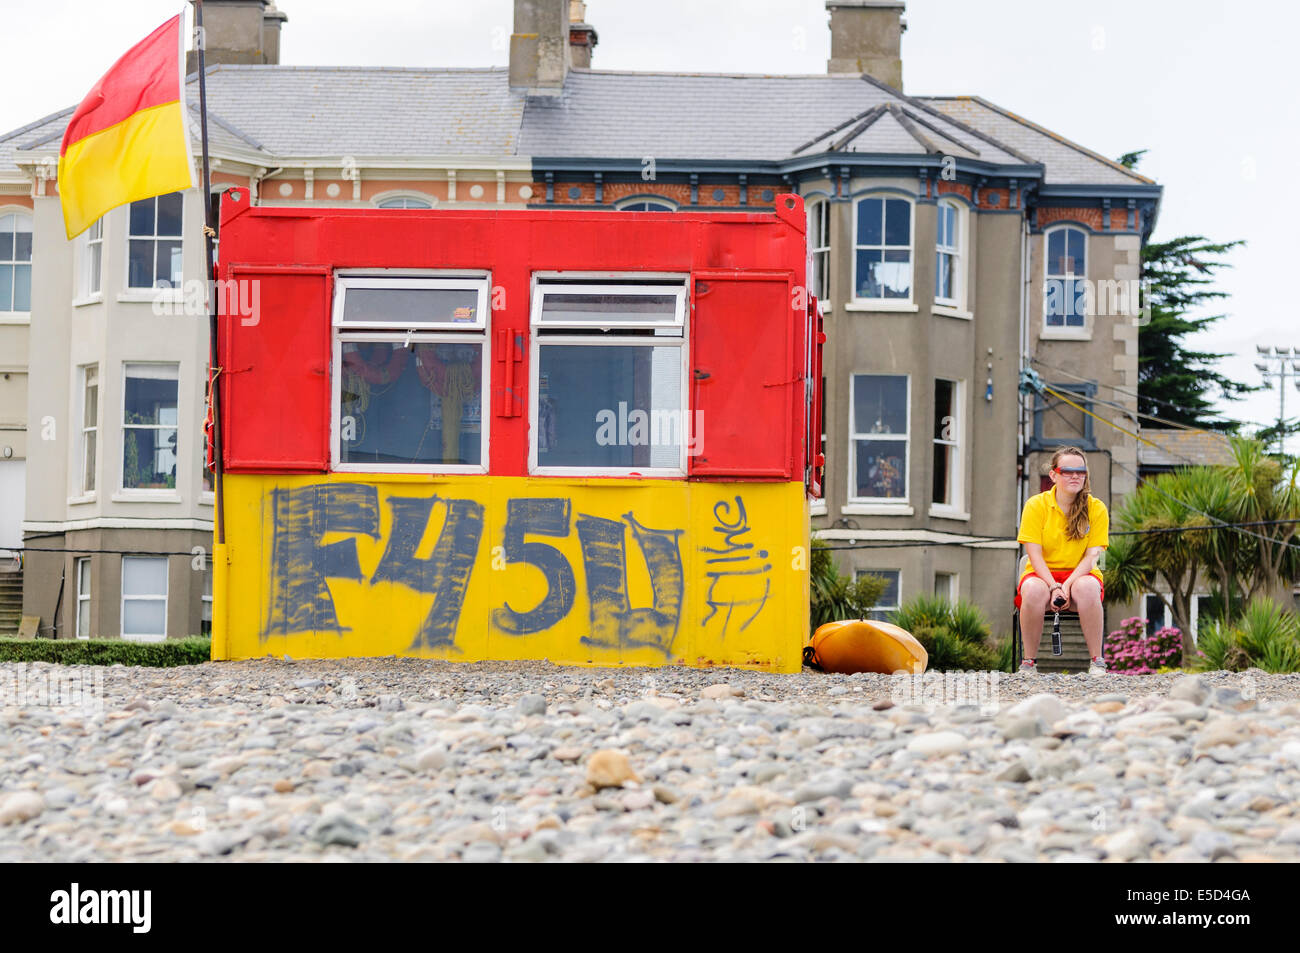 La vie des femmes garde à côté d'une hutte de graffitis à Bray, comté de Wicklow Irlande Strand Banque D'Images